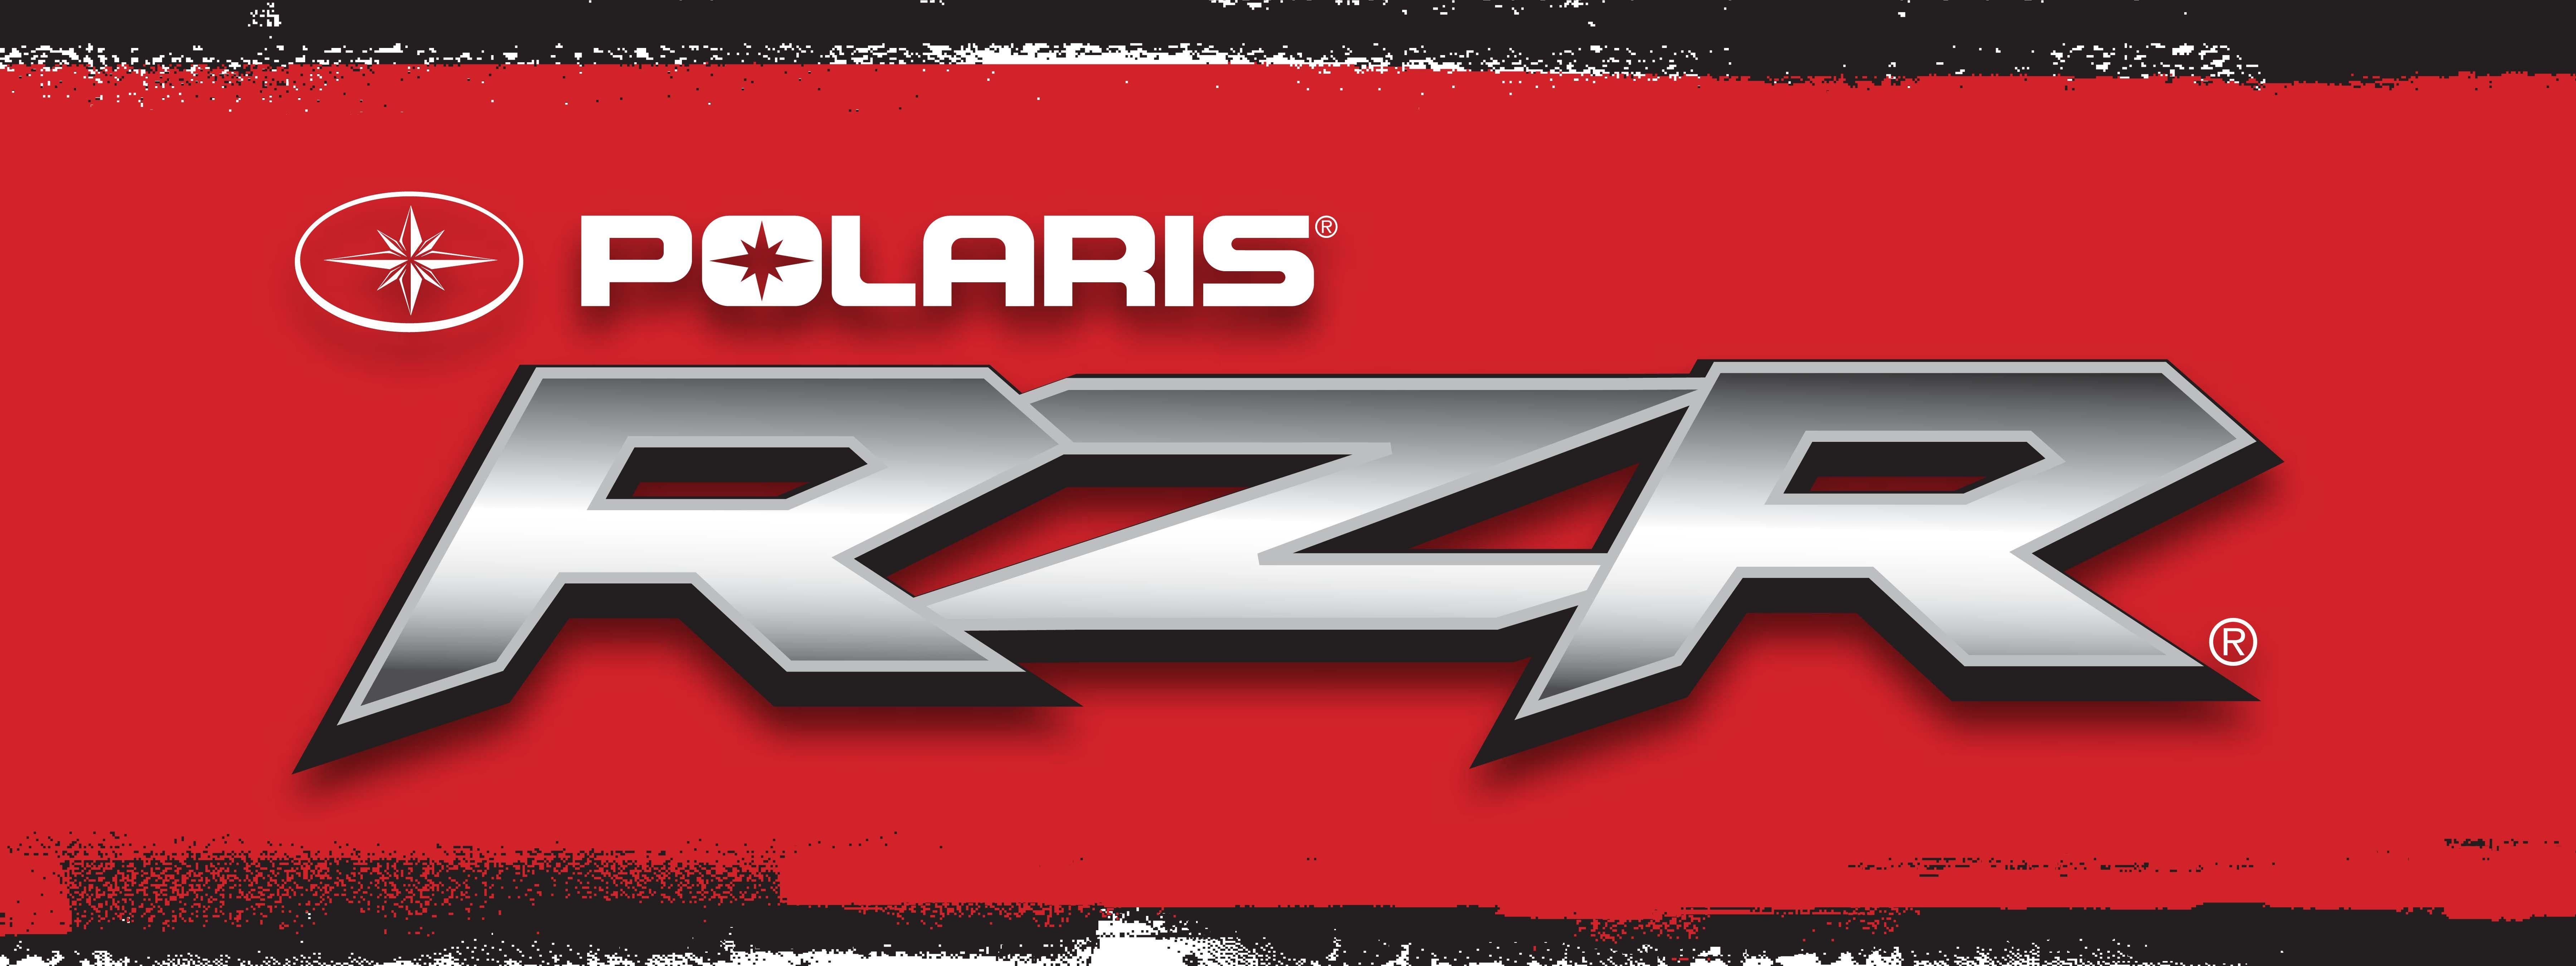 Polaris RZR Logo - polaris-rzr-logo-tag-walts-outdoor-center - Autobot India